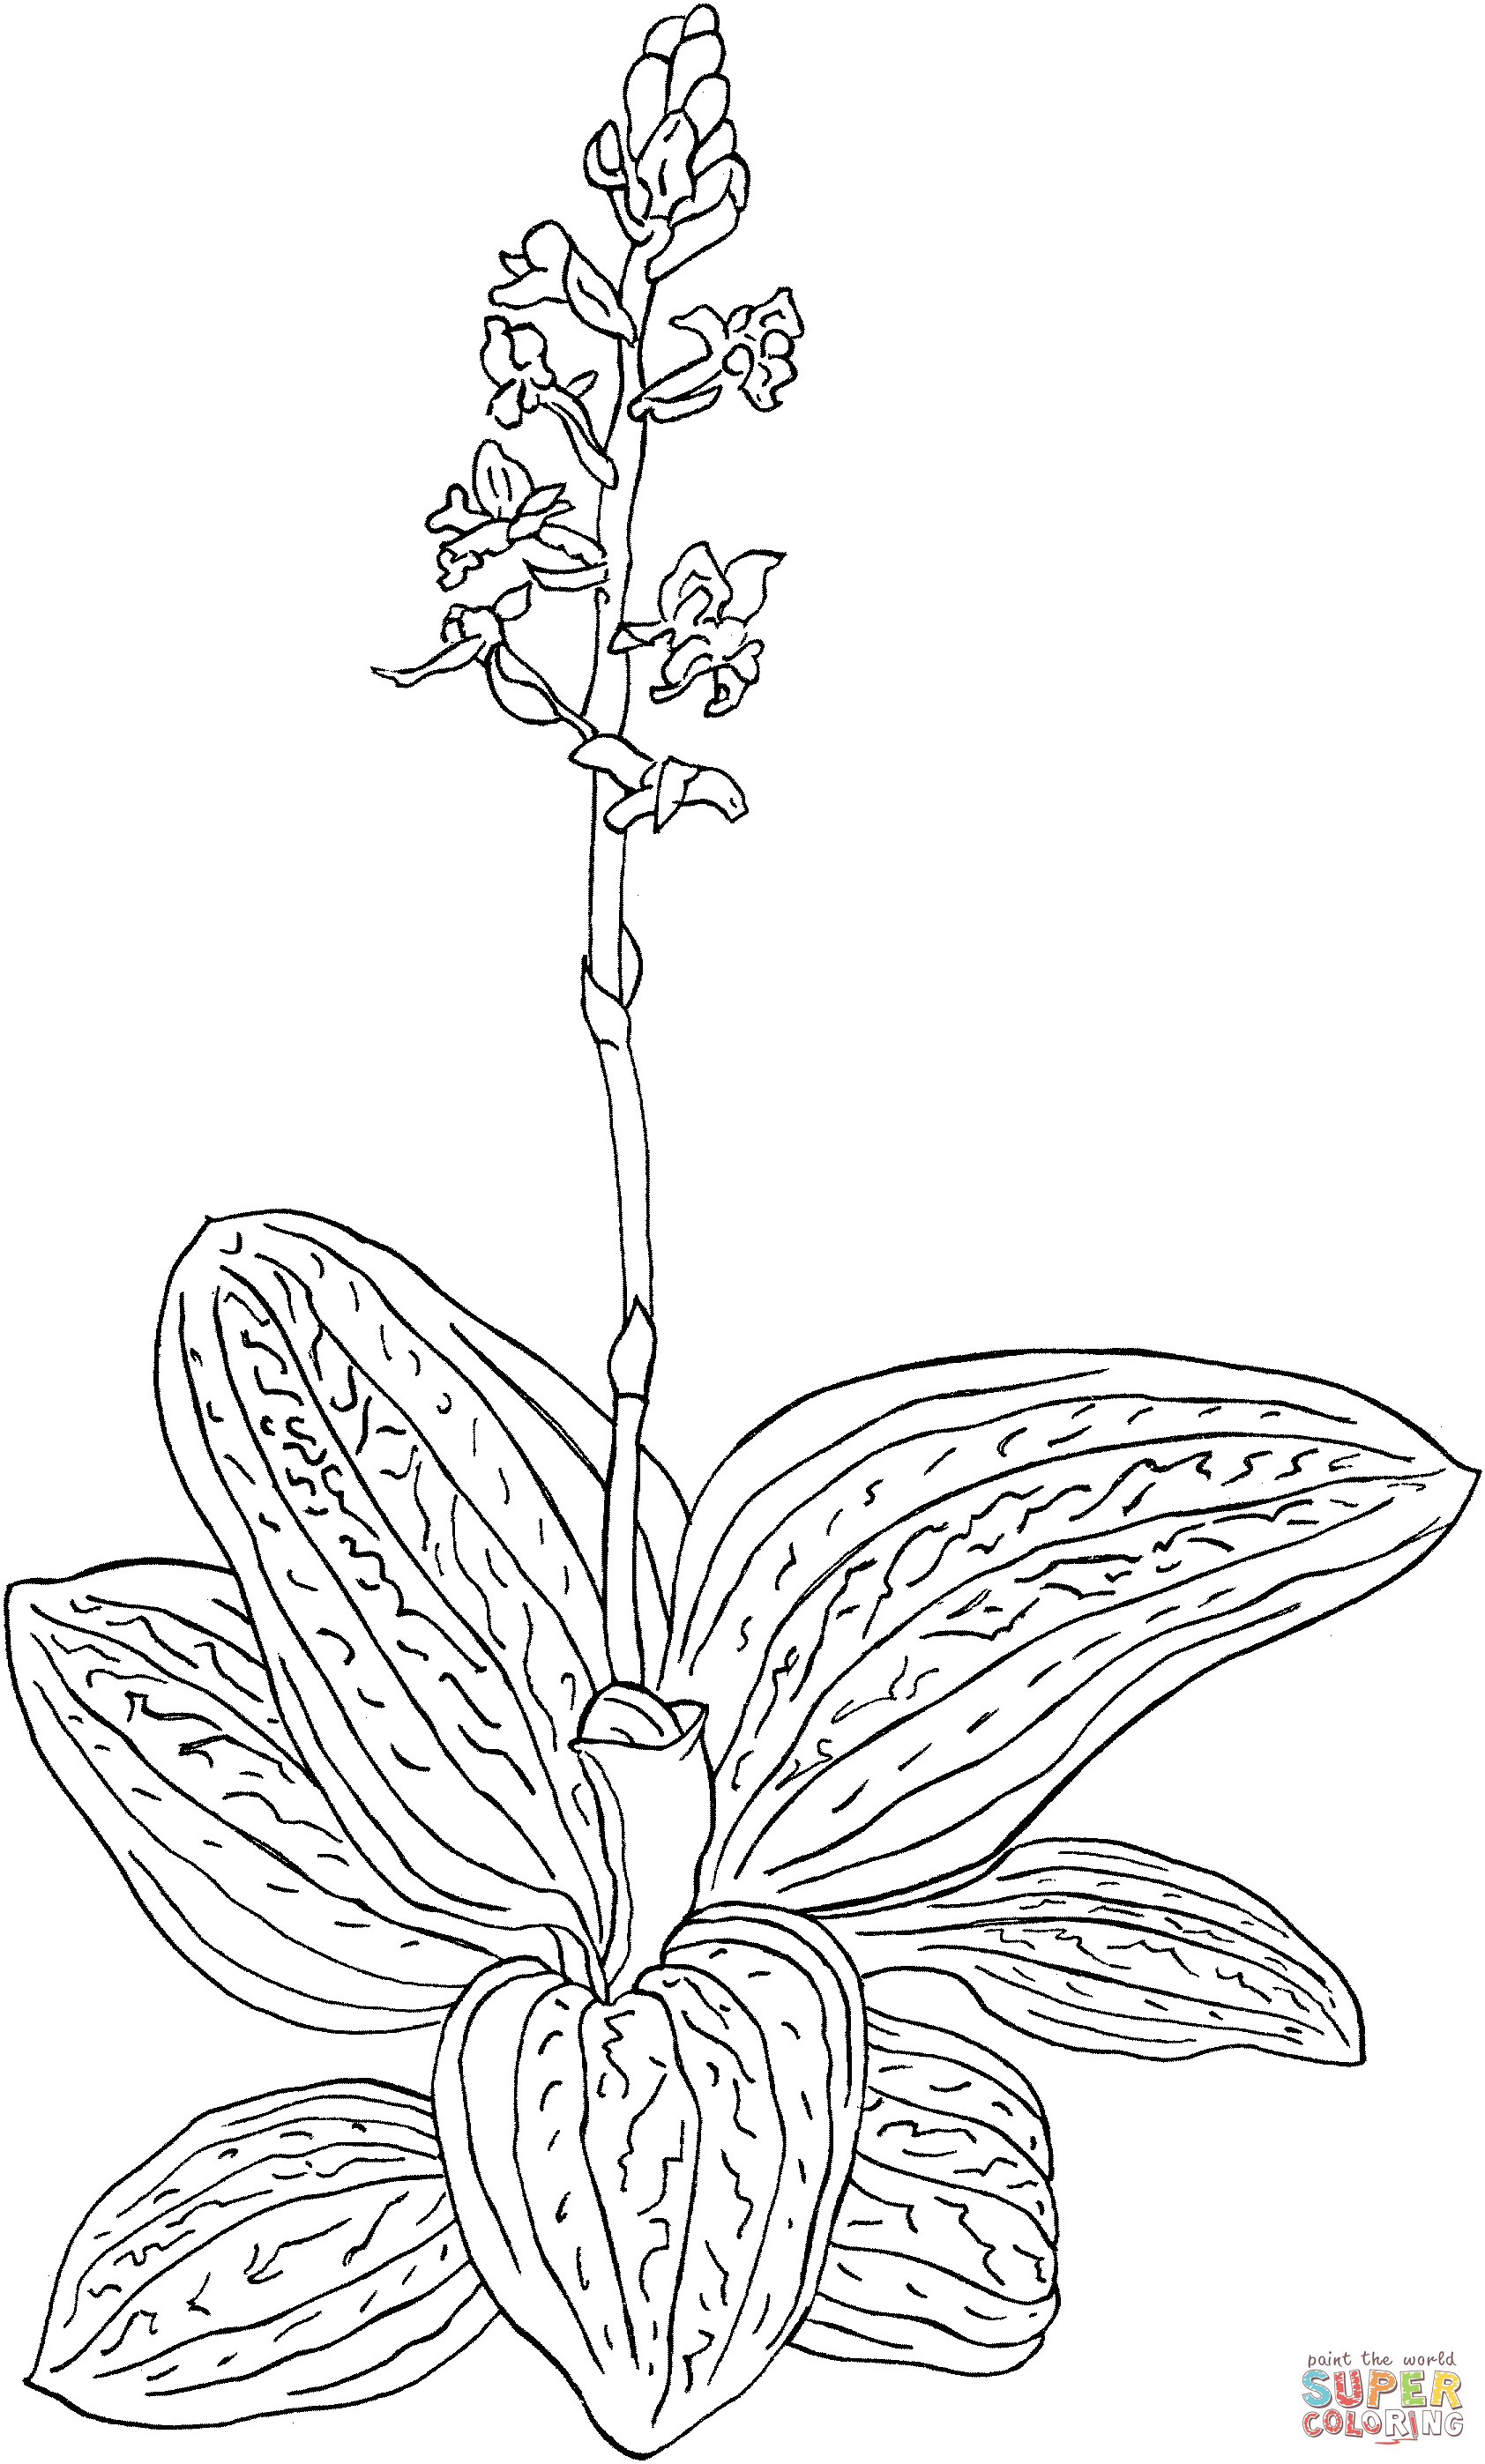 Лудизия Дисколор или орхидея Black Jewel Orchid